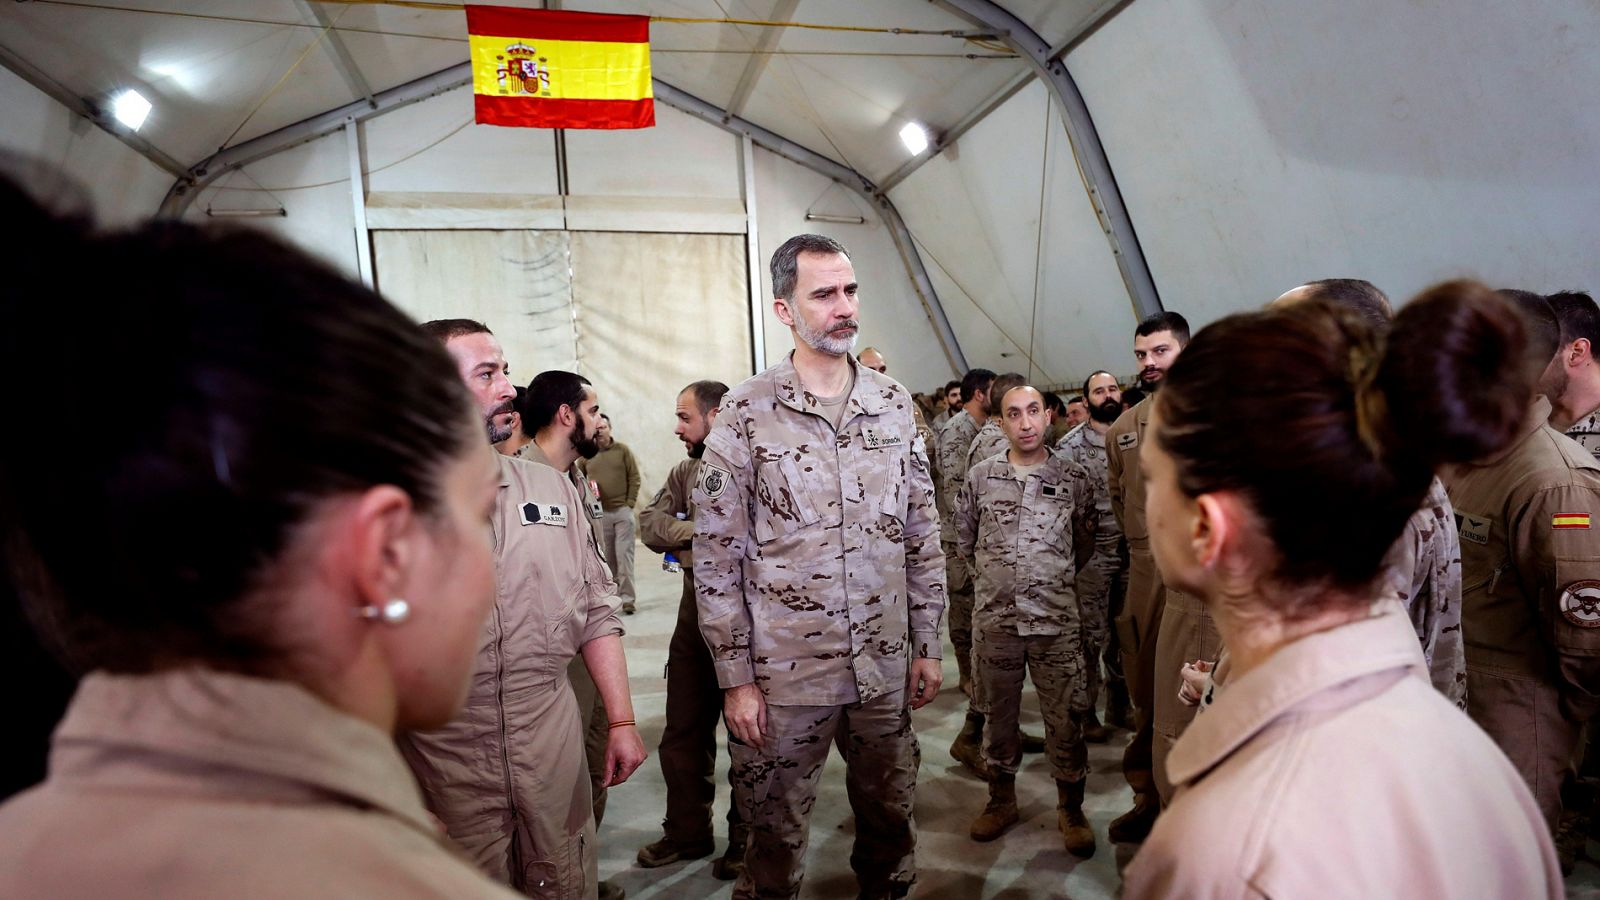 Fuerzas Armadas: Felipe VI llega a Irak para visitar a las tropas españolas - RTVE.es